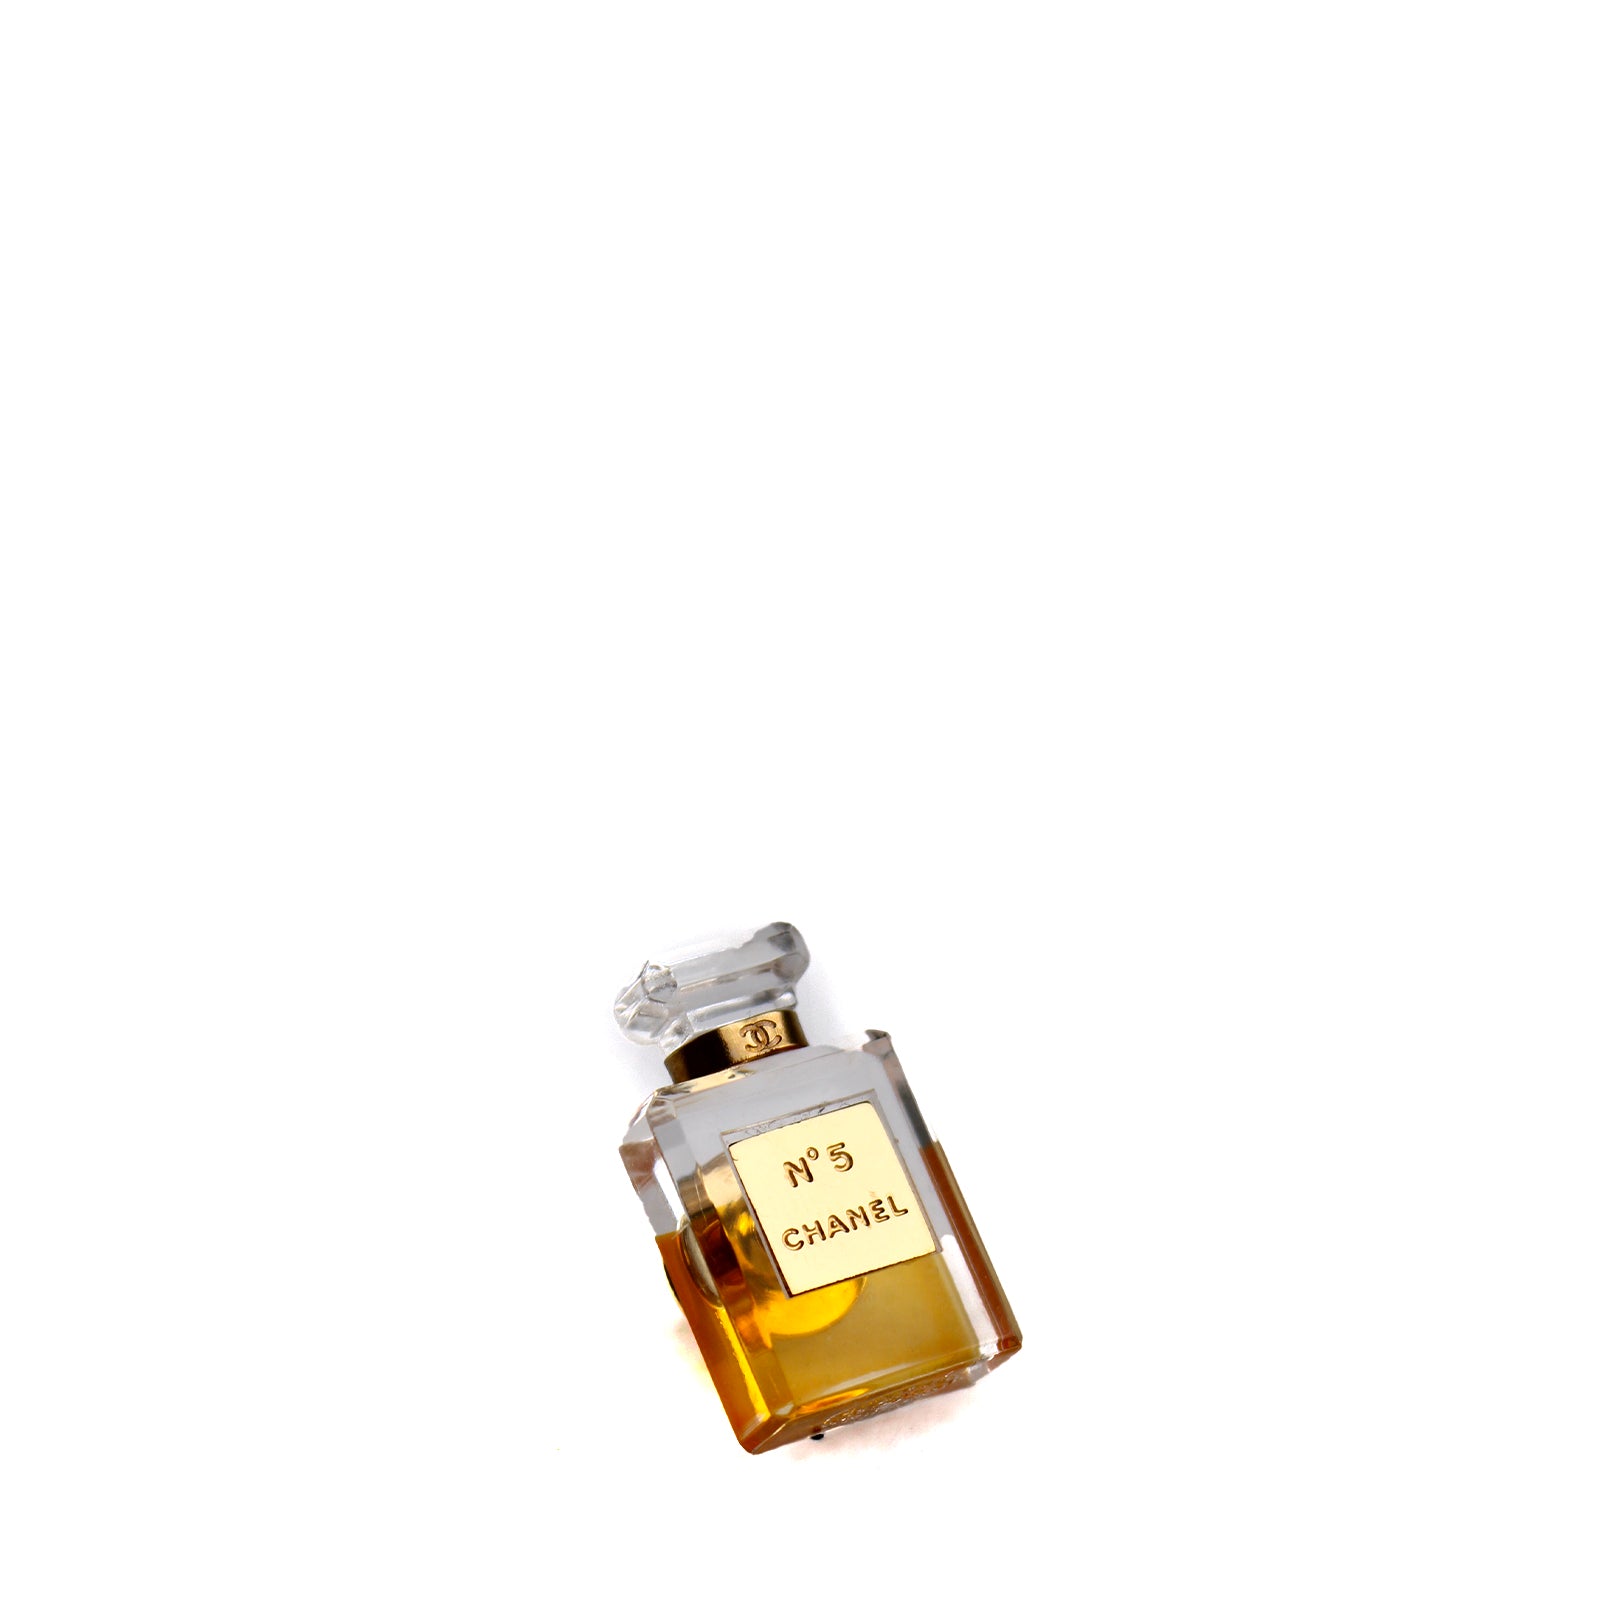 CHANEL - Broche Flacon du parfum Chanel N°5